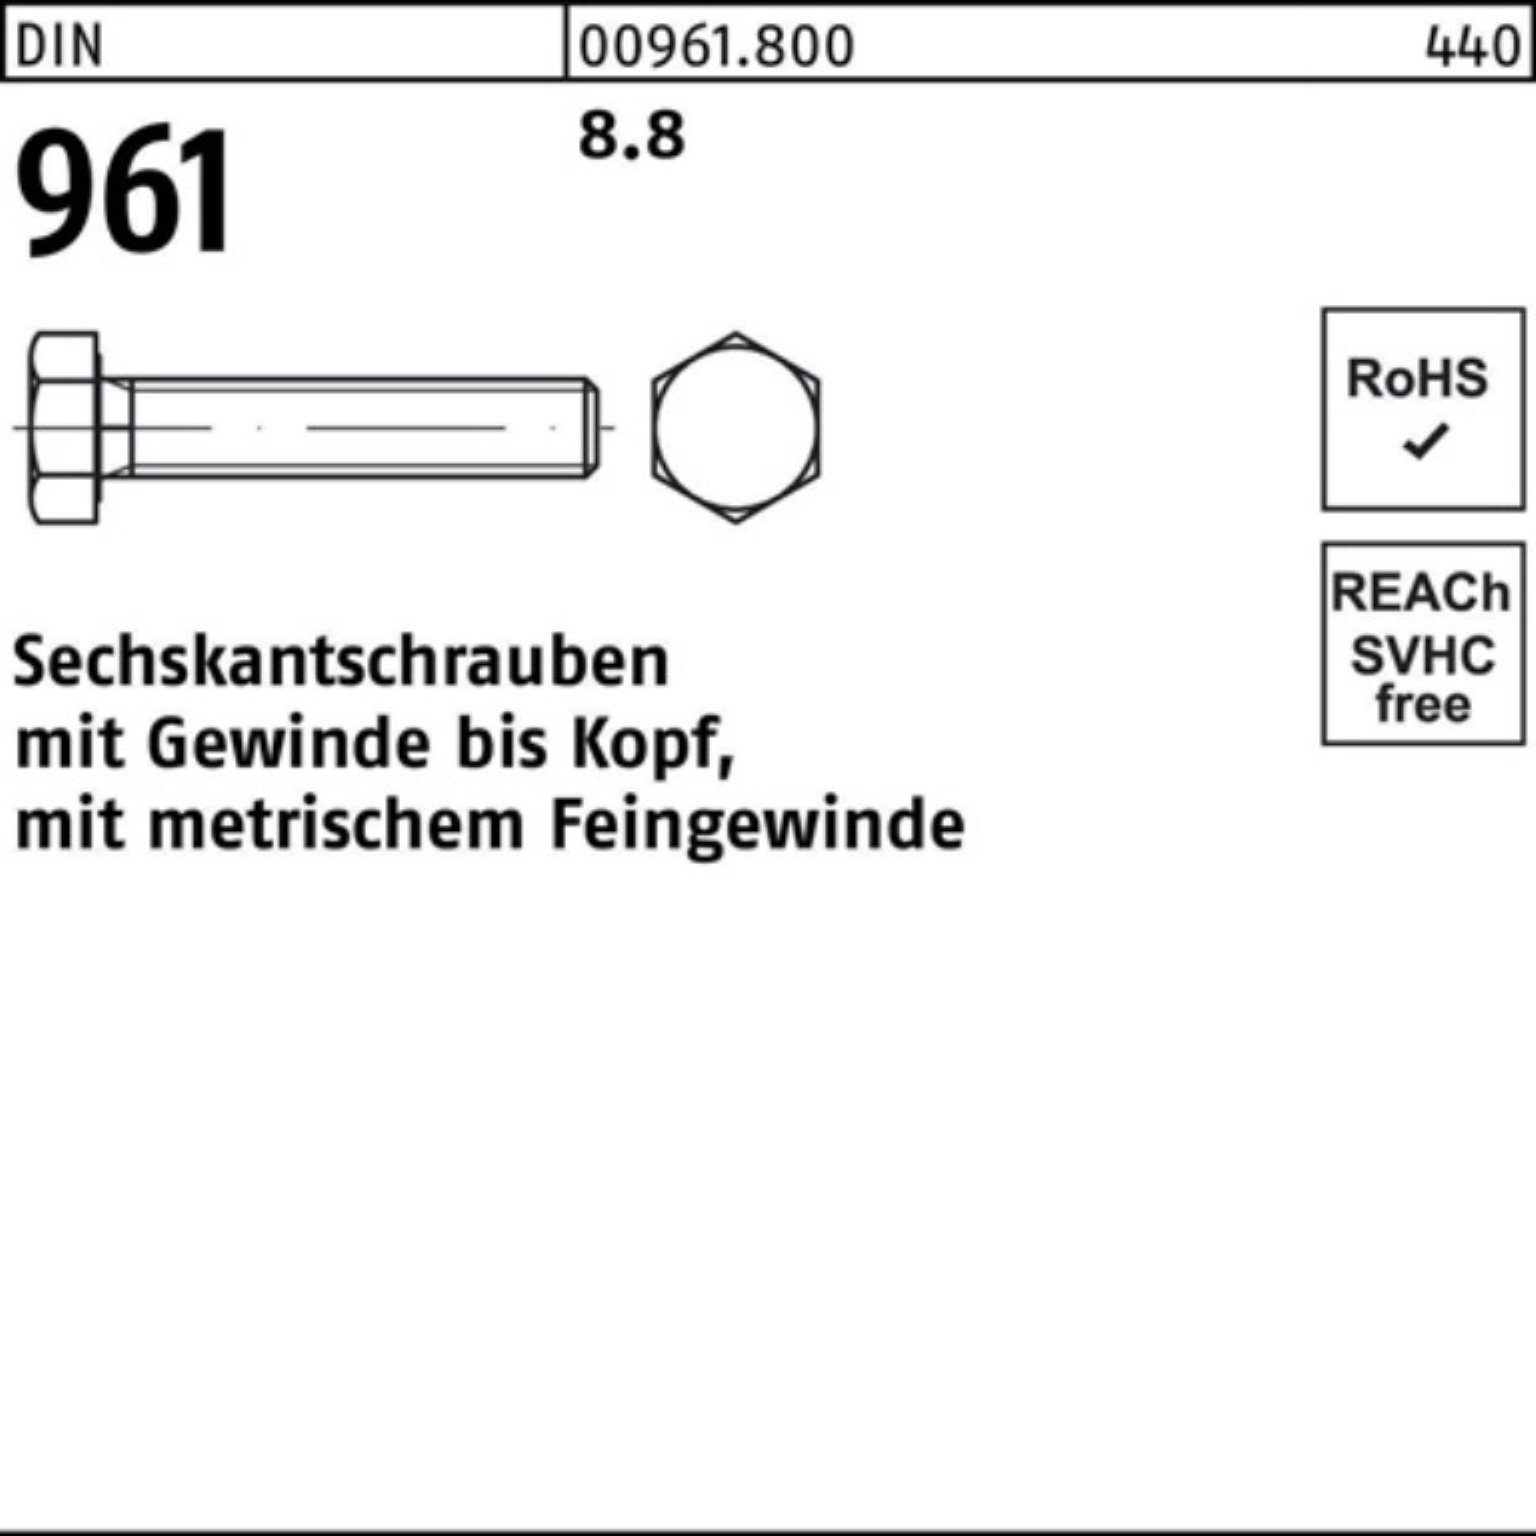 Sechskantschraube Sechskantschraube 8.8 Pack Stück 90 25 961 VG DIN Reyher DIN 100er M16x1,5x